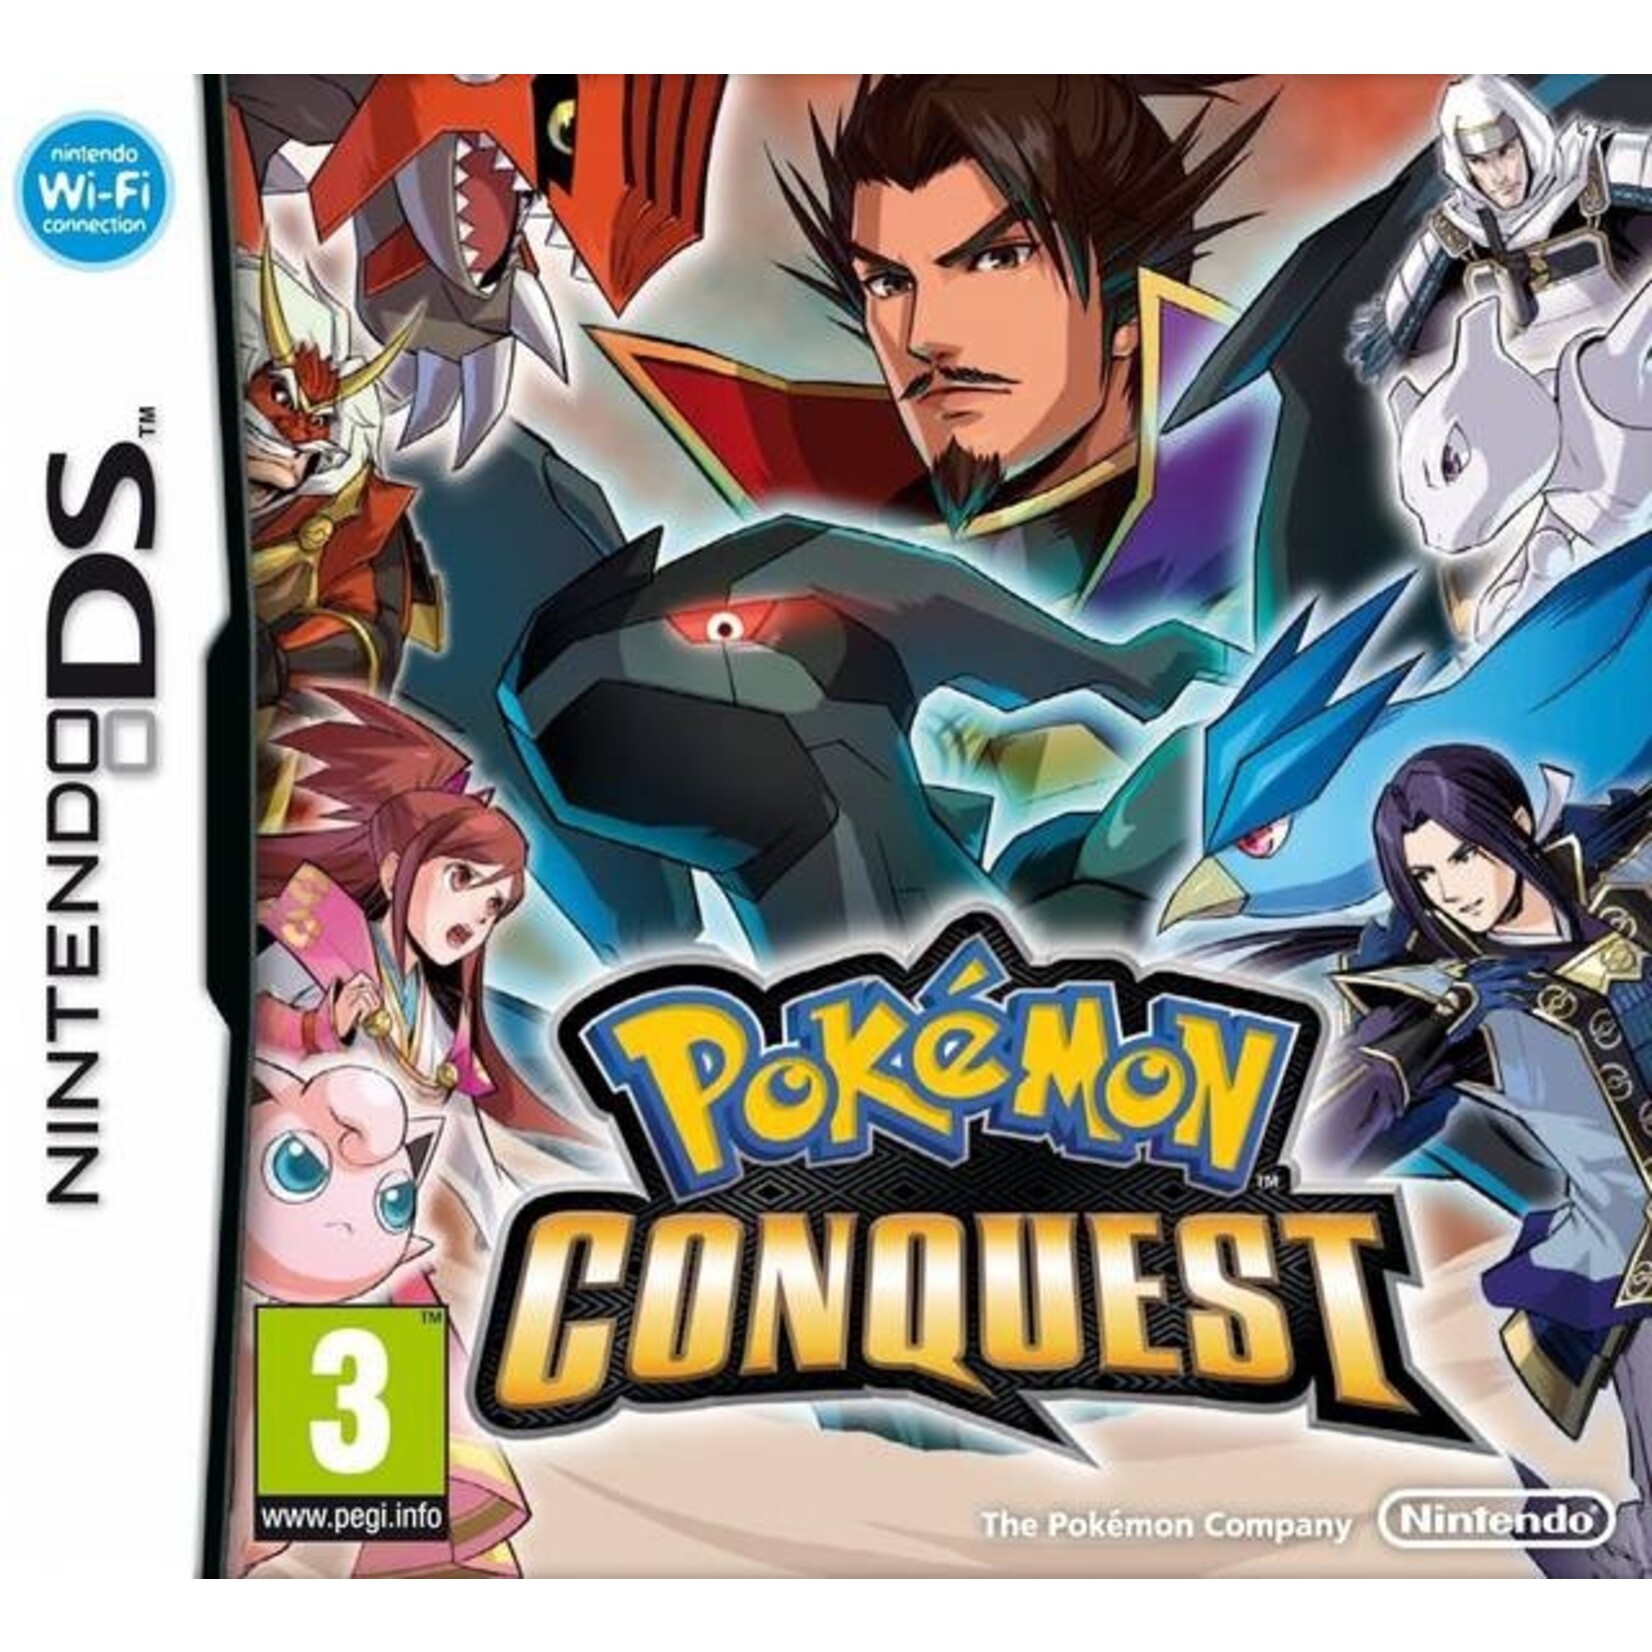 Pokemon conquest